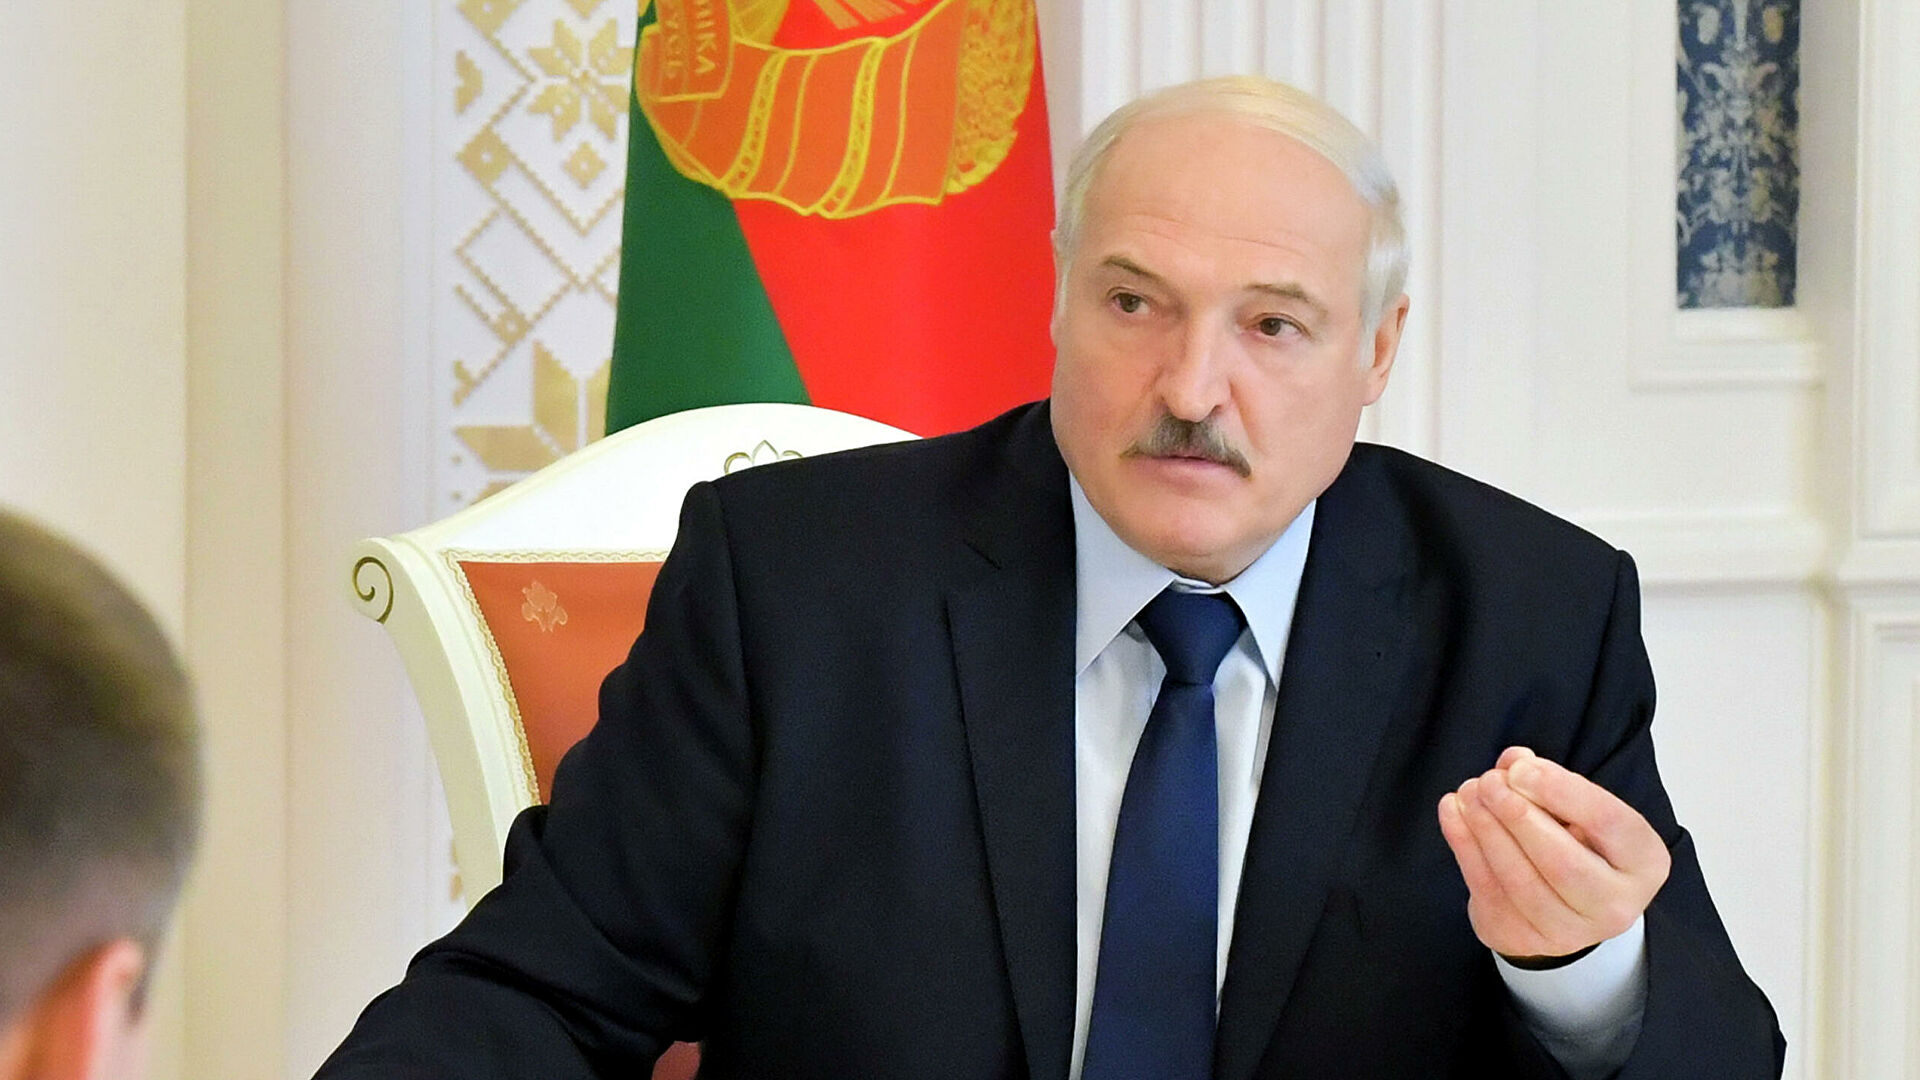 Лукашенко призвал перейти на кнопочные телефоны, чтобы избежать слежки